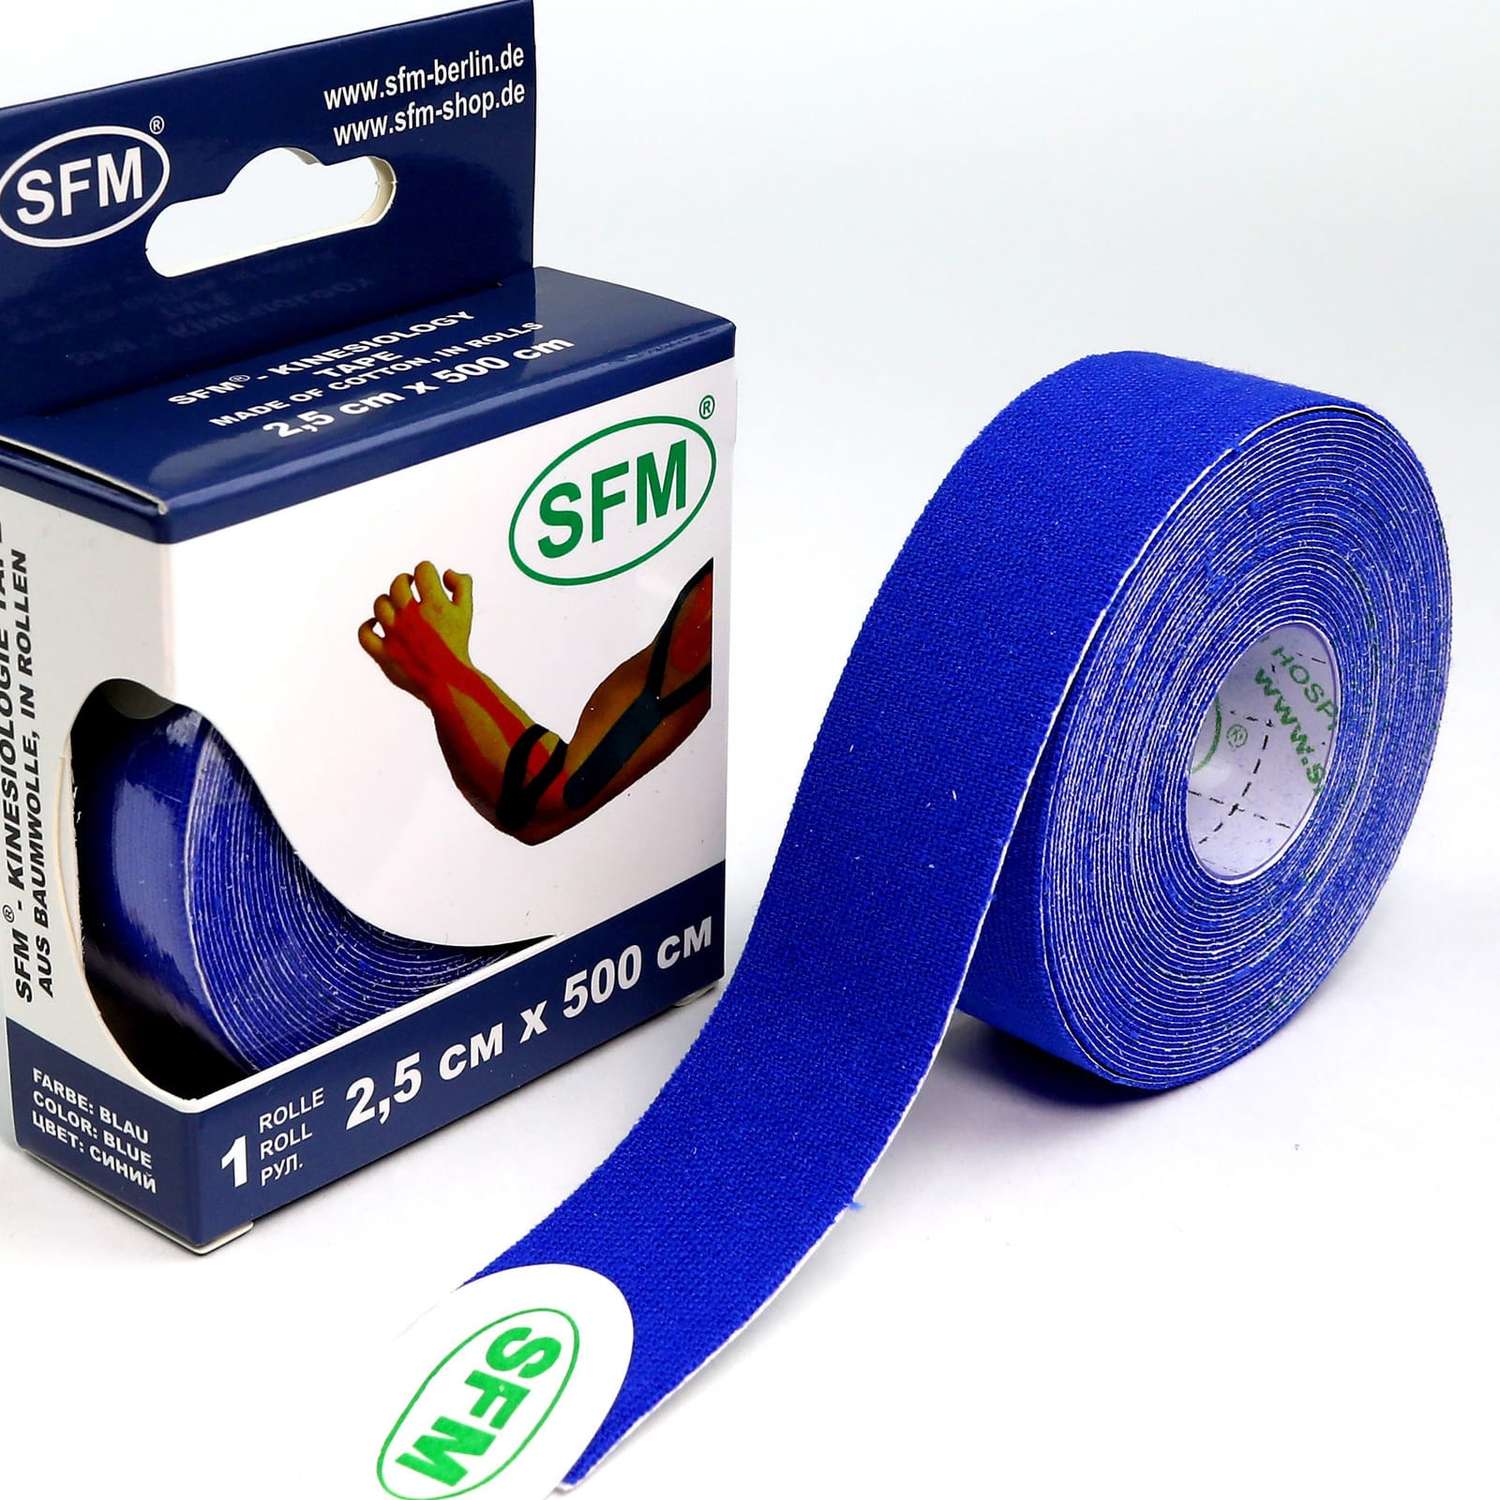 Кинезиотейп SFM Hospital Products Plaster на хлопковой основе 2.5х500 см синего цвета в диспенсере - фото 3